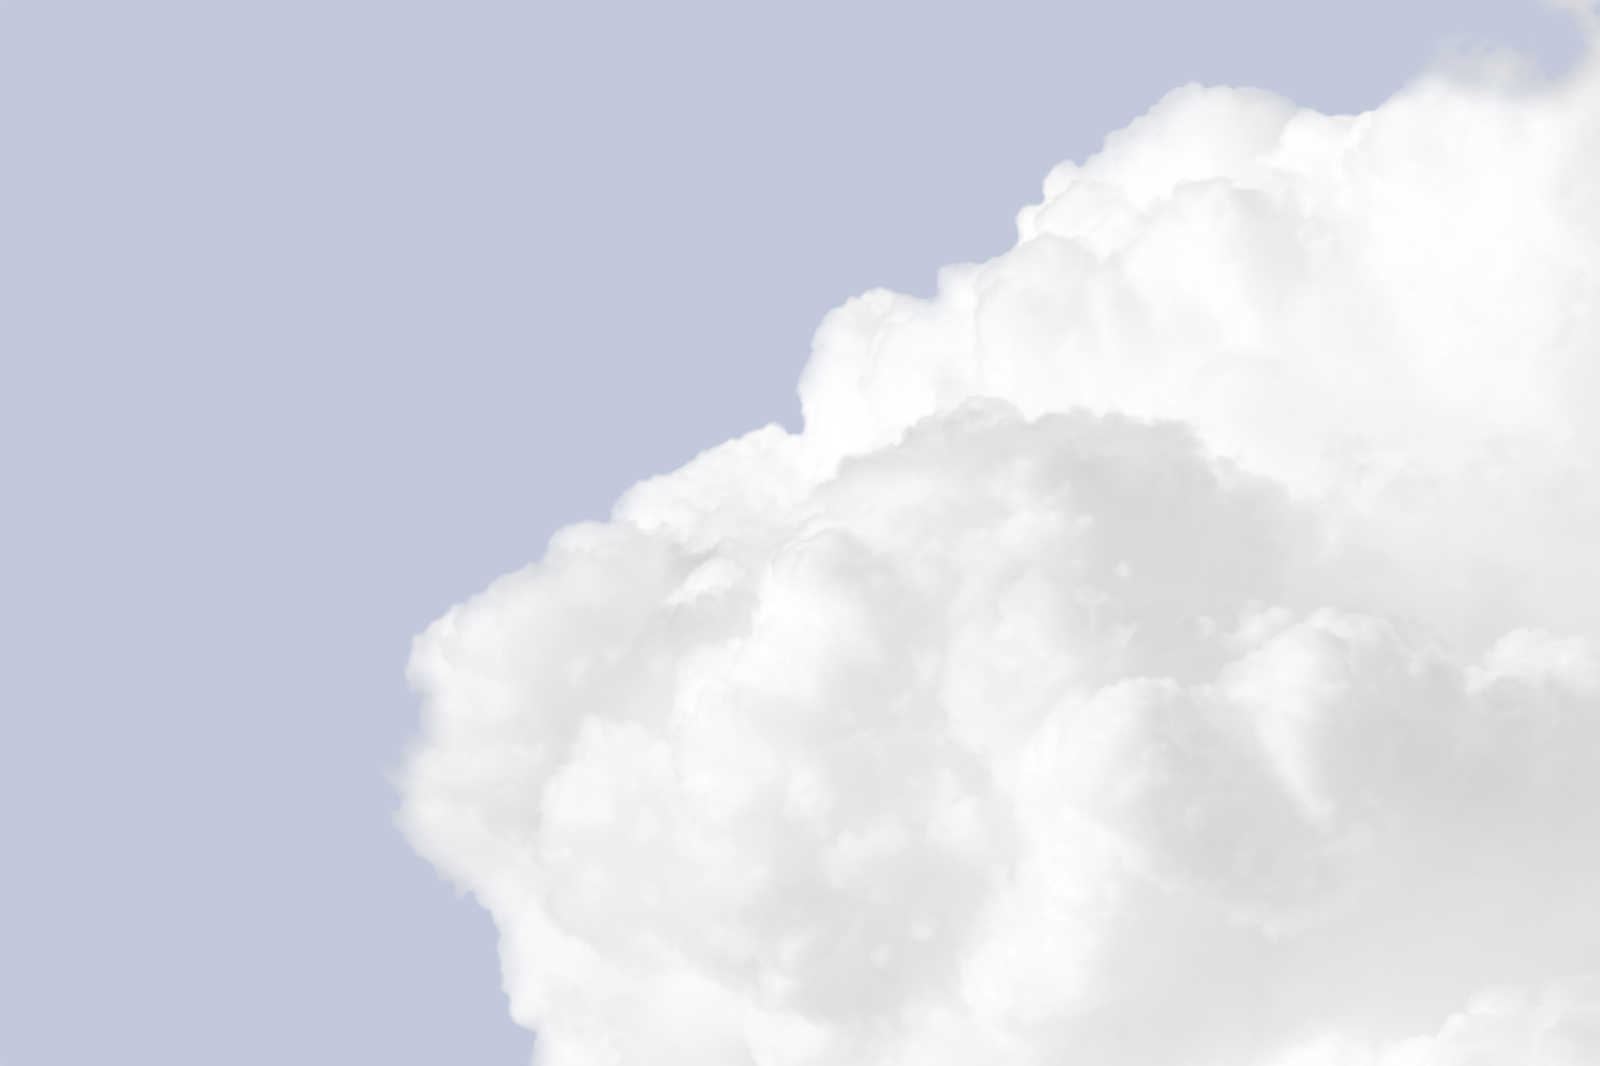             Canvas schilderij met witte wolken in een helderblauwe lucht - 0,90 m x 0,60 m
        